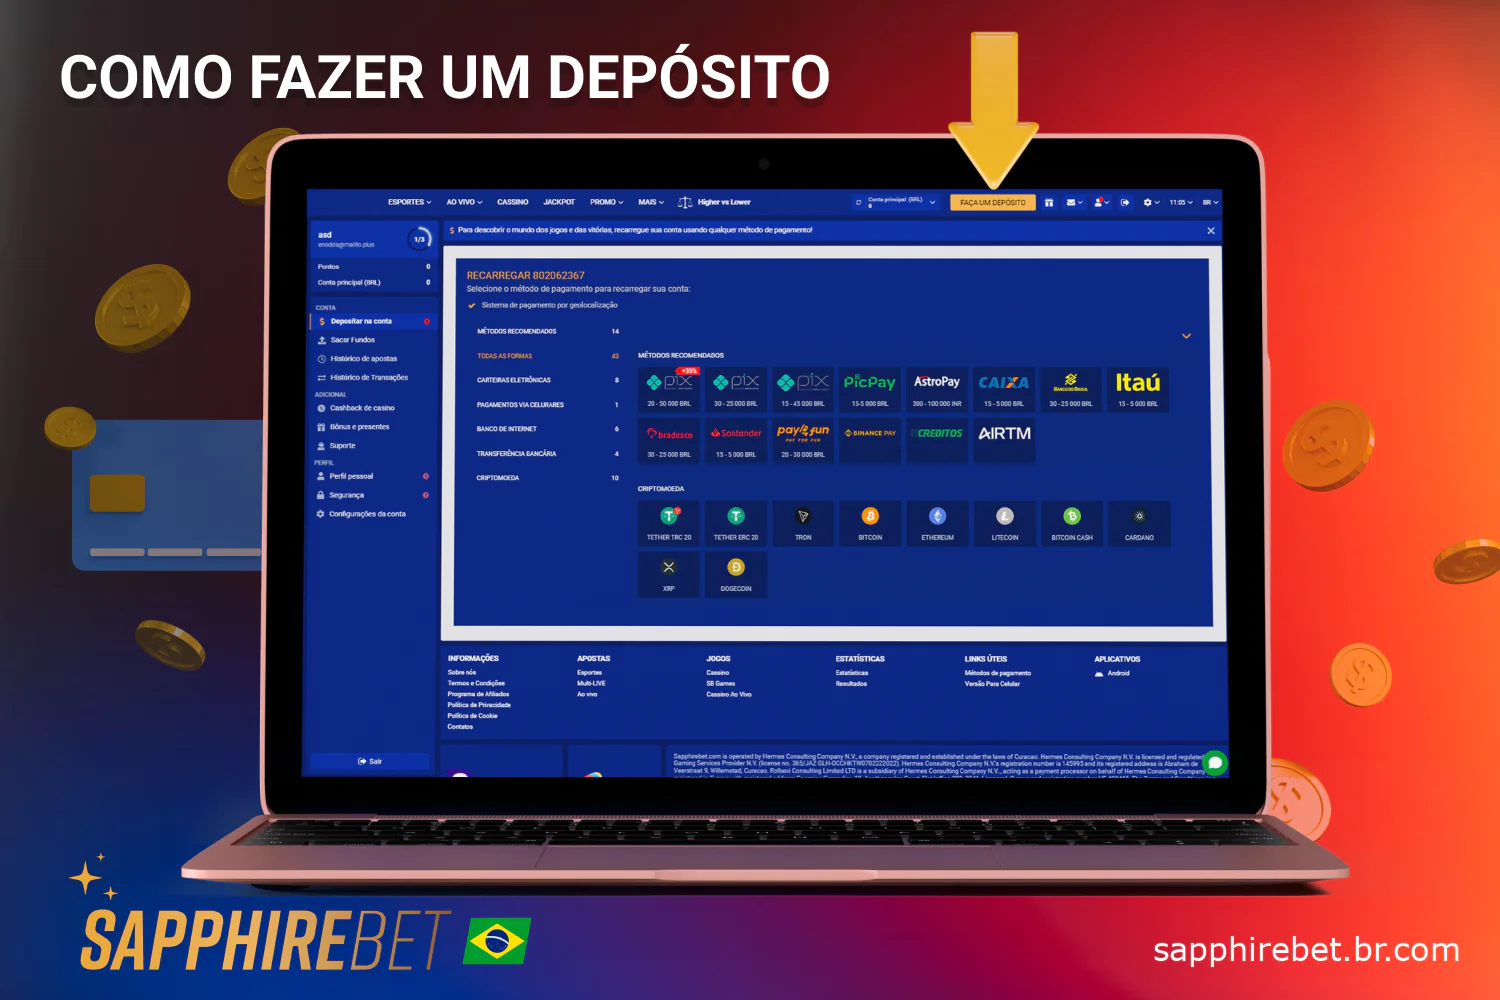 Os usuários do site oficial e do aplicativo móvel da Sapphirebet Brasil podem depositar fundos em suas contas após o registro